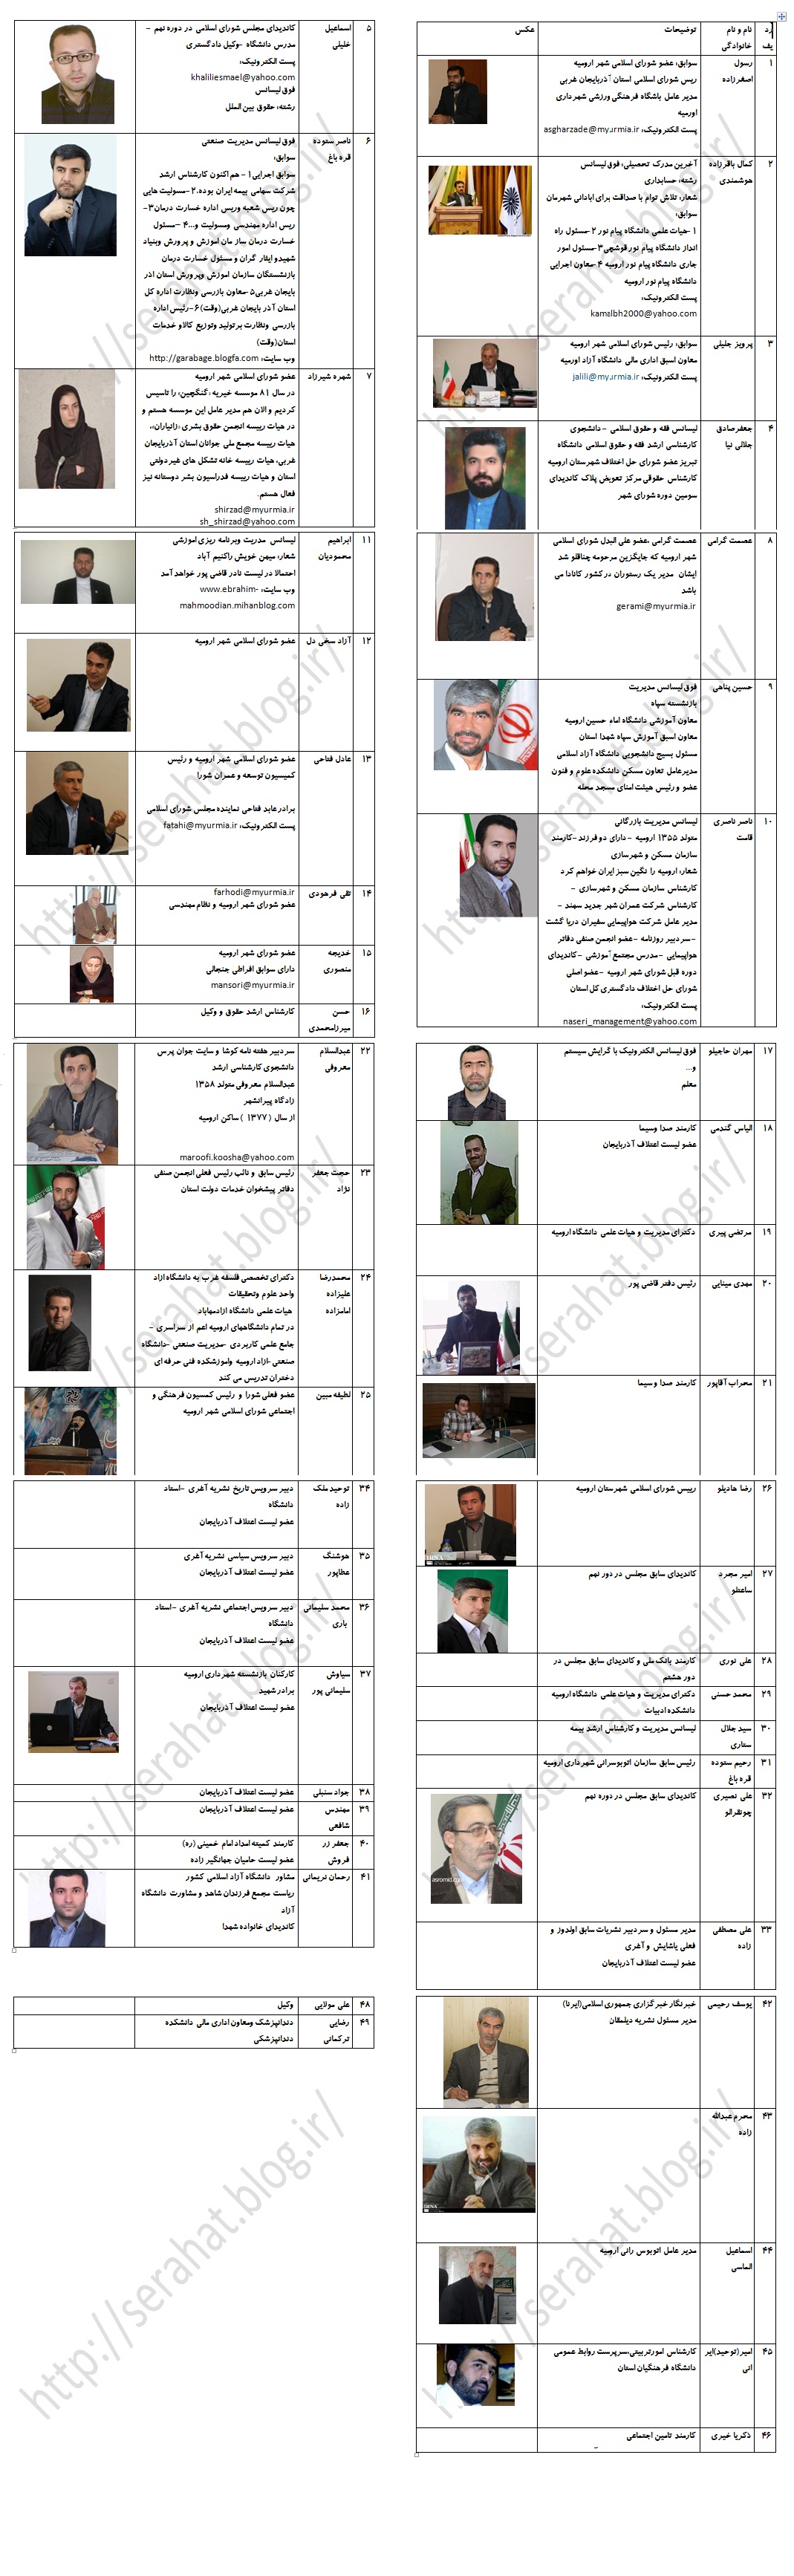 لیست کاندیداهای احتمالی شورای شهر اورمیه